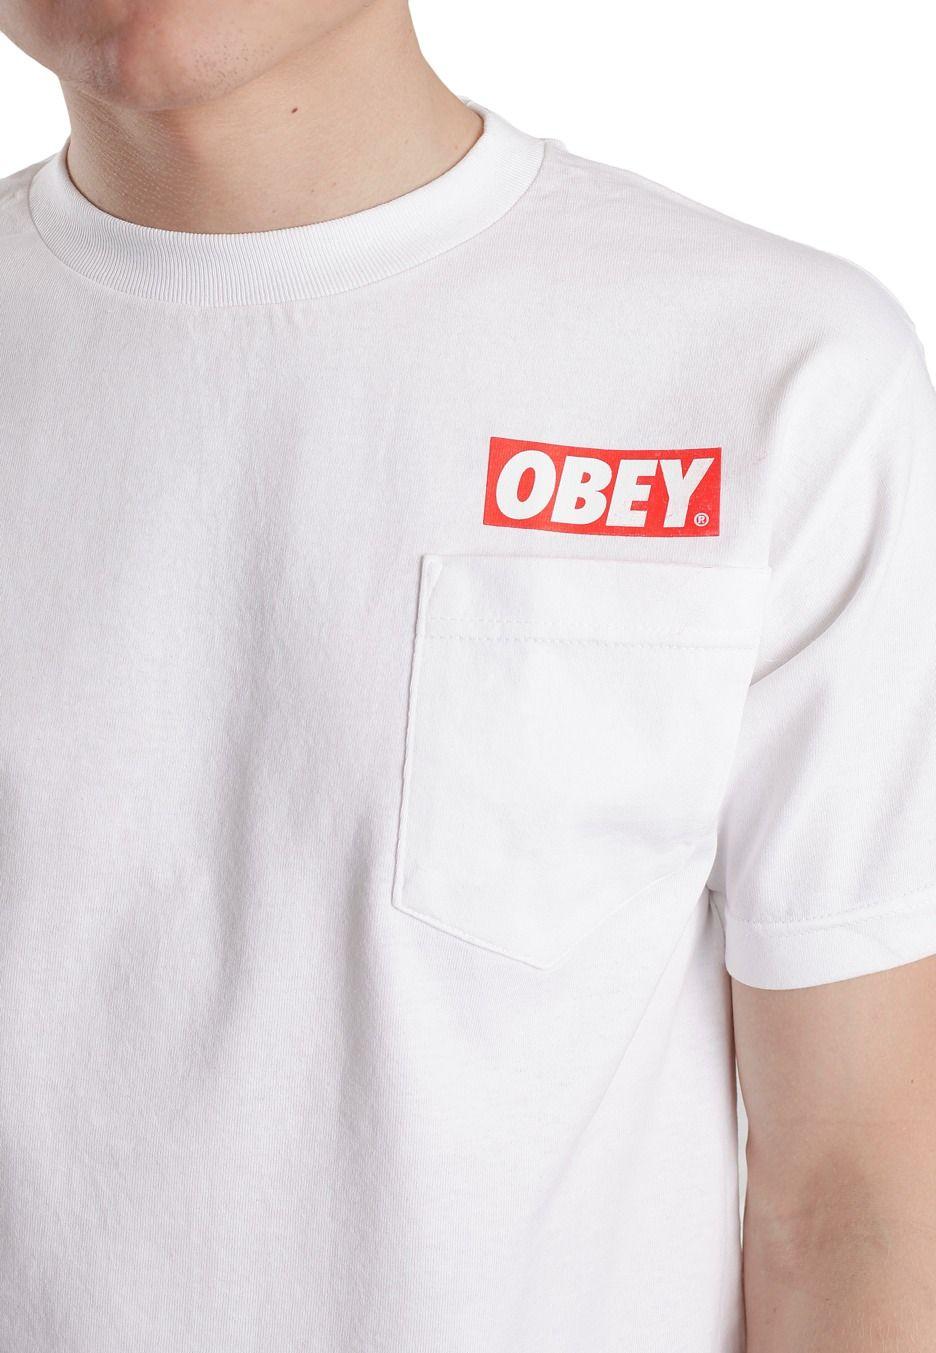 Obey Bar Logo - Obey - Obey Bar Logo White - T-Shirt - Streetwear Shop - Impericon ...